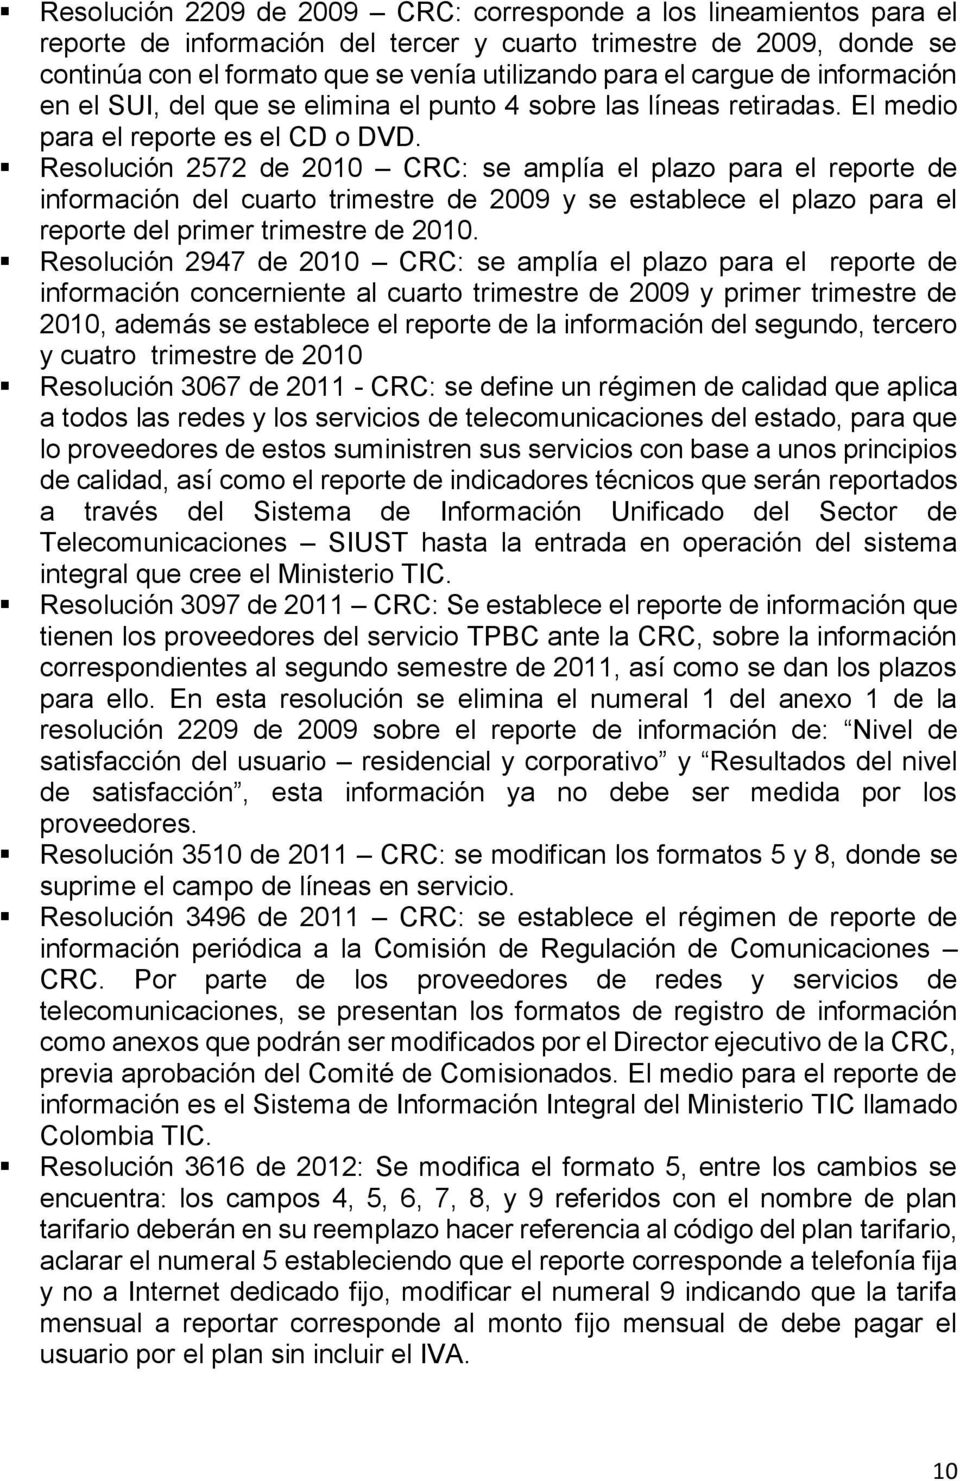 Resolución 2572 de 2010 CRC: se amplía el plazo para el reporte de información del cuarto trimestre de 2009 y se establece el plazo para el reporte del primer trimestre de 2010.